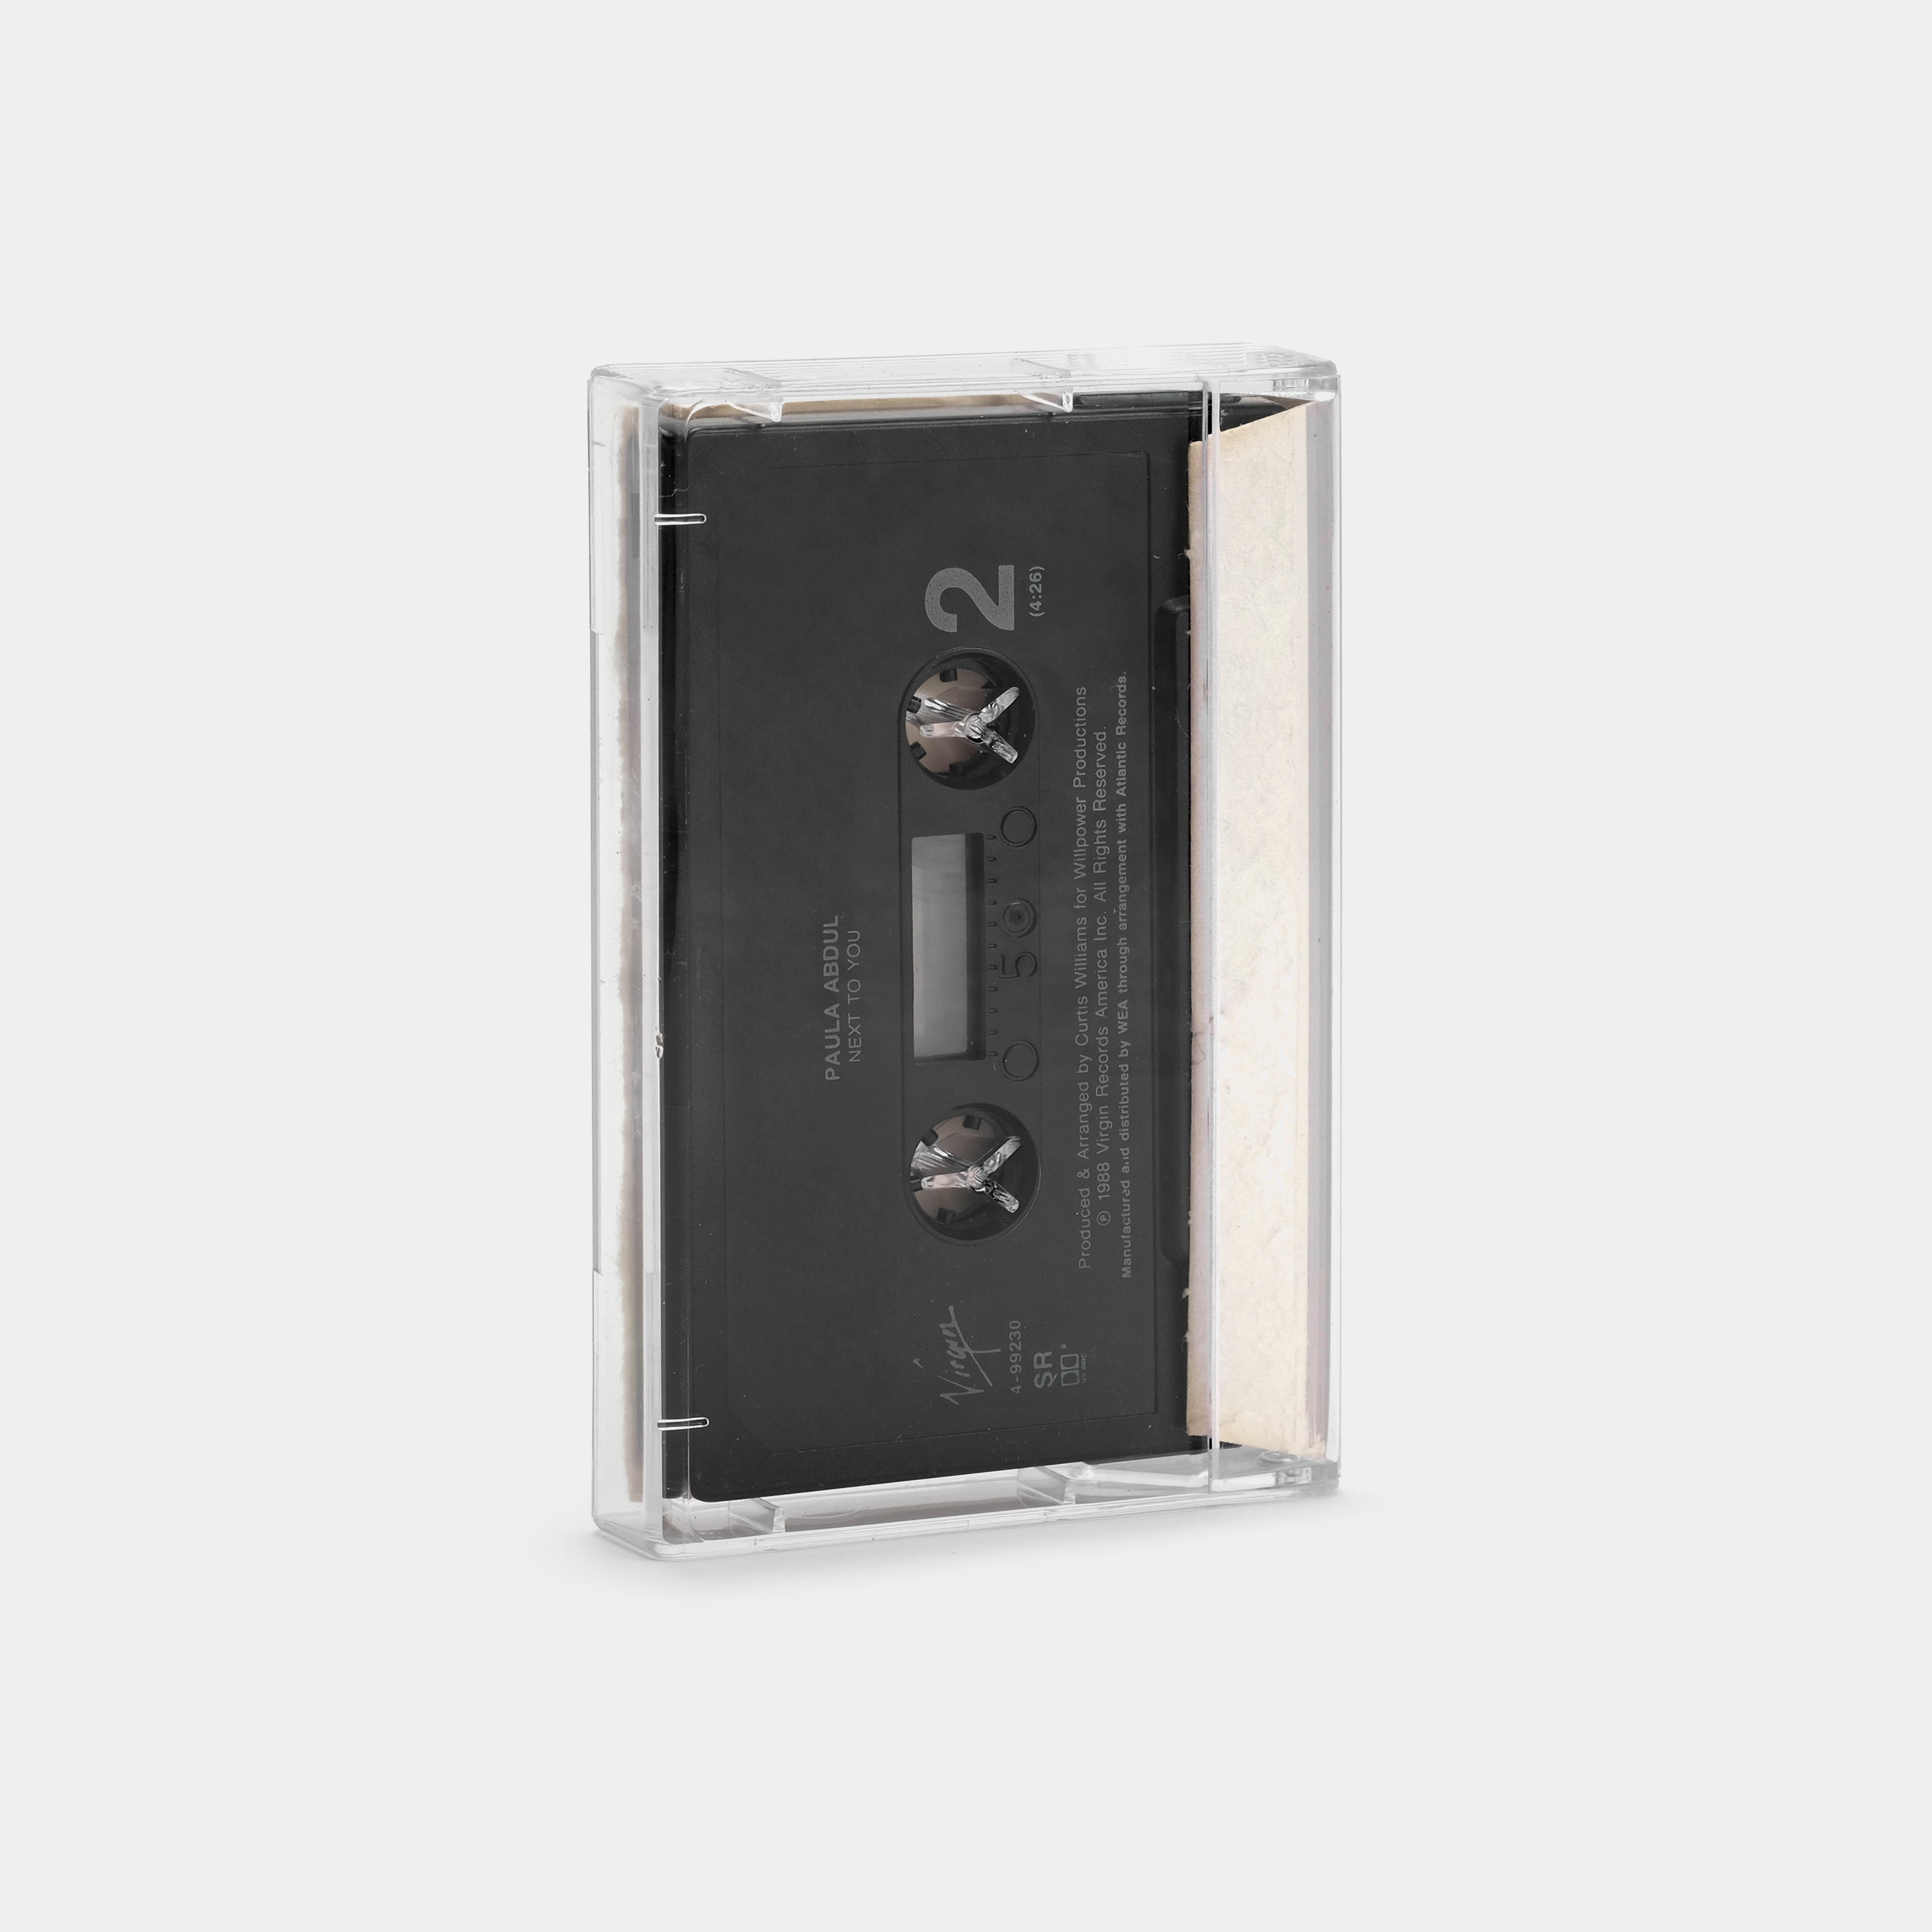 Paula Abdul - Forever Your Girl Cassette Tape